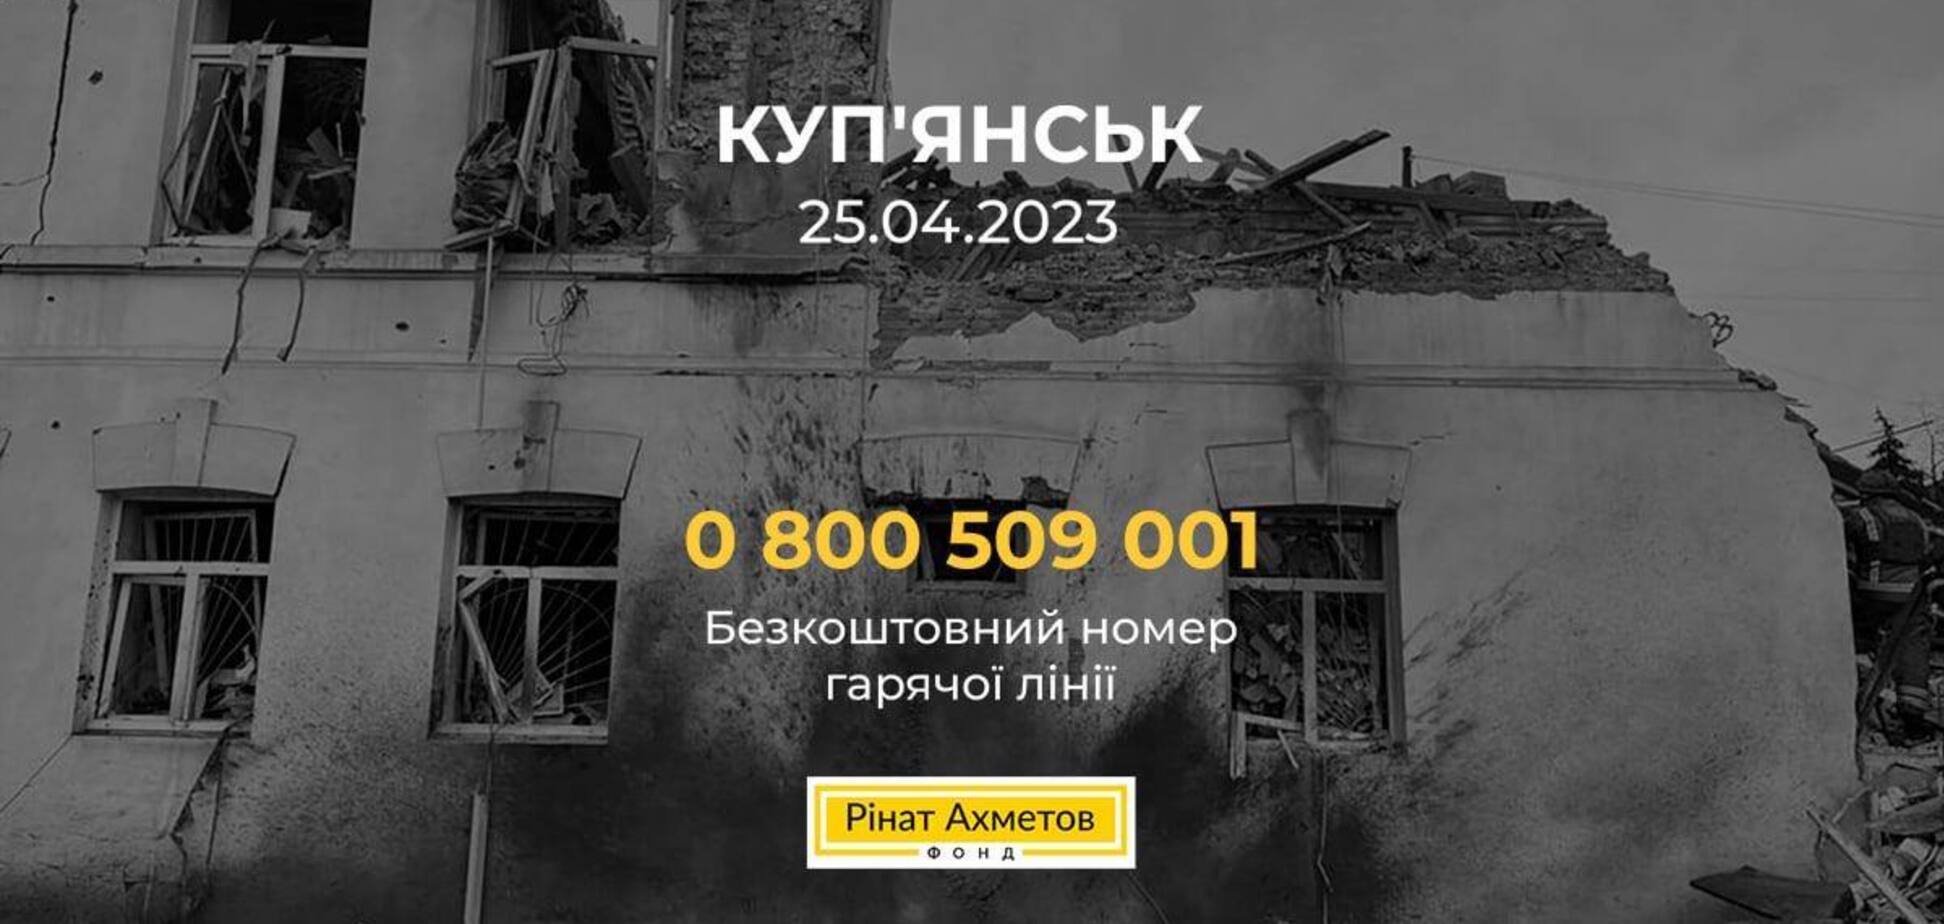 Фонд Ріната Ахметова зголосився допомогти постраждалим під час ракетного удару РФ по Куп'янську